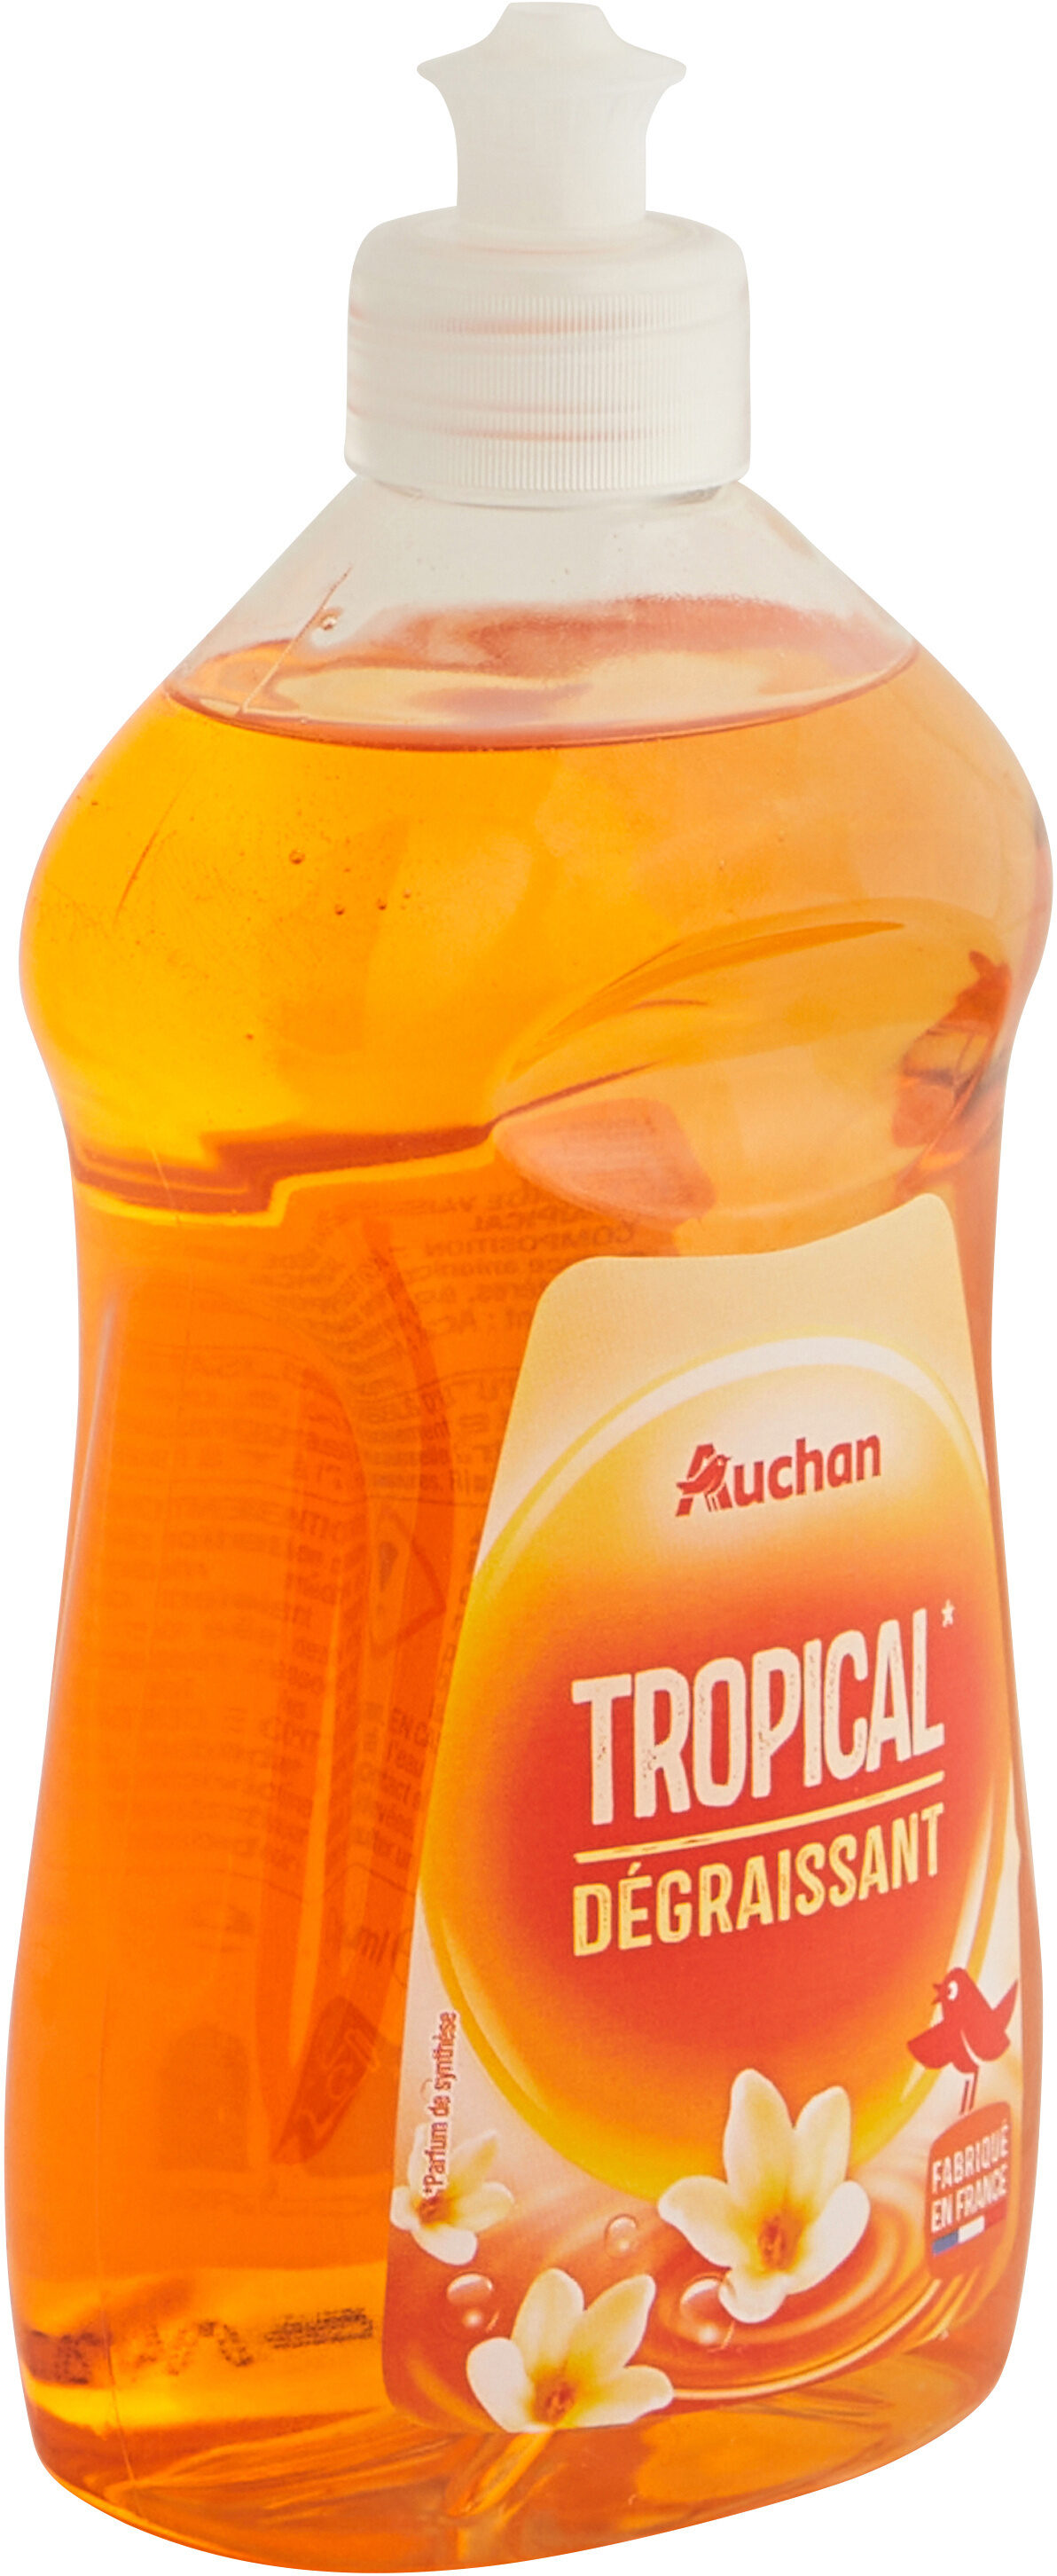 Liquide vaisselle dégraissant tropical - Produit - fr